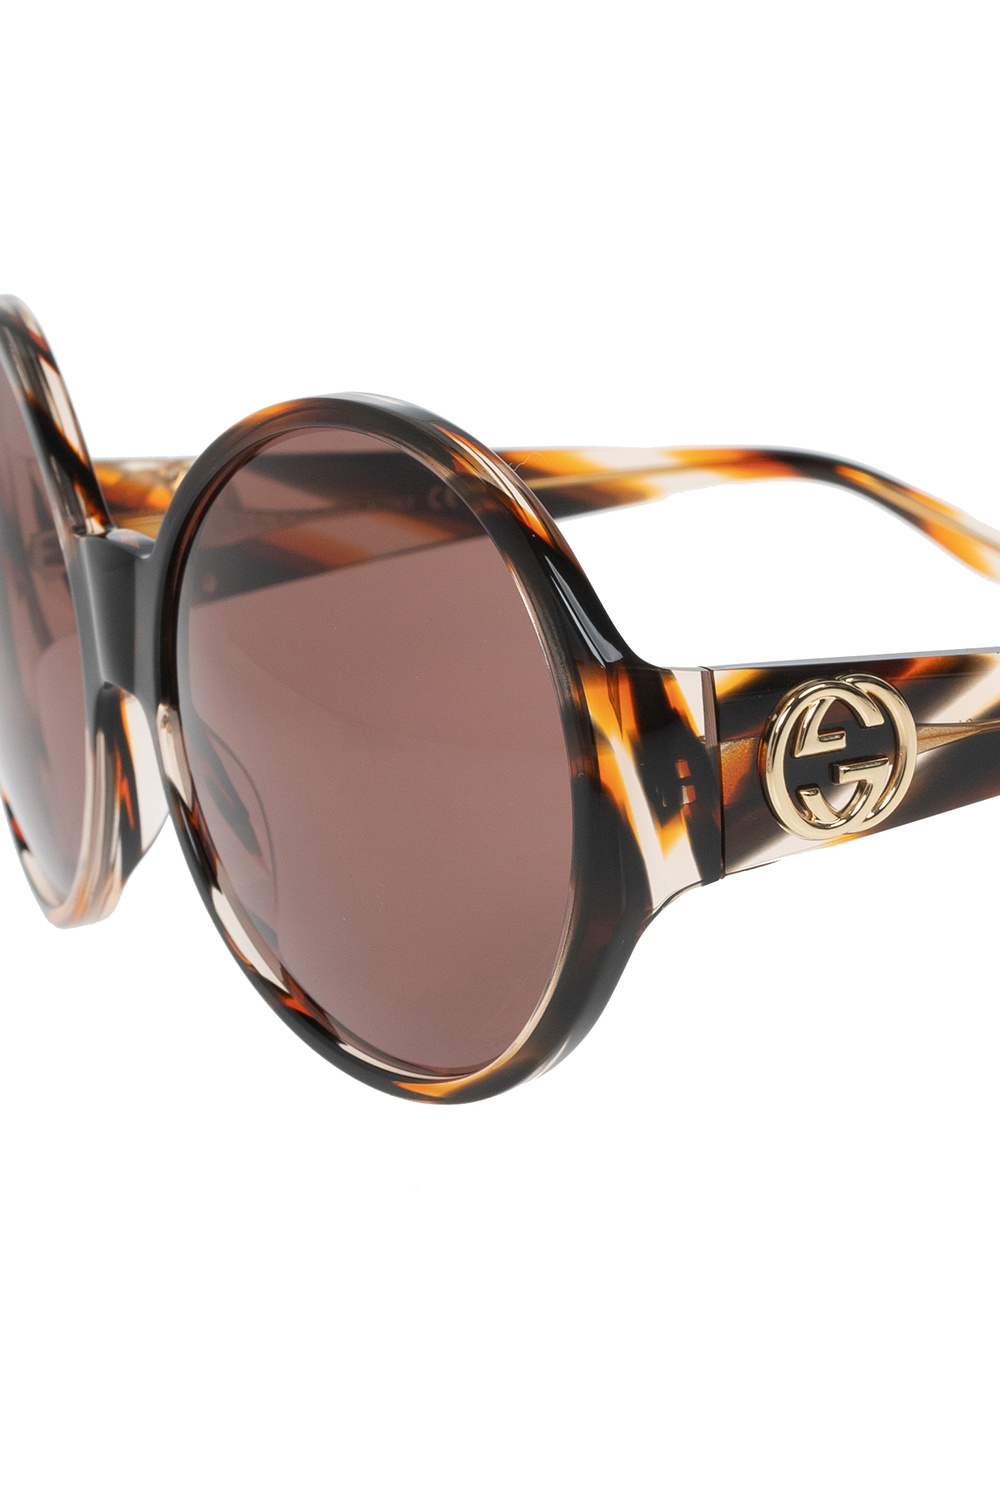 Gucci HAWKERS Polarized 360 Sunglasses for Men and Women UN400